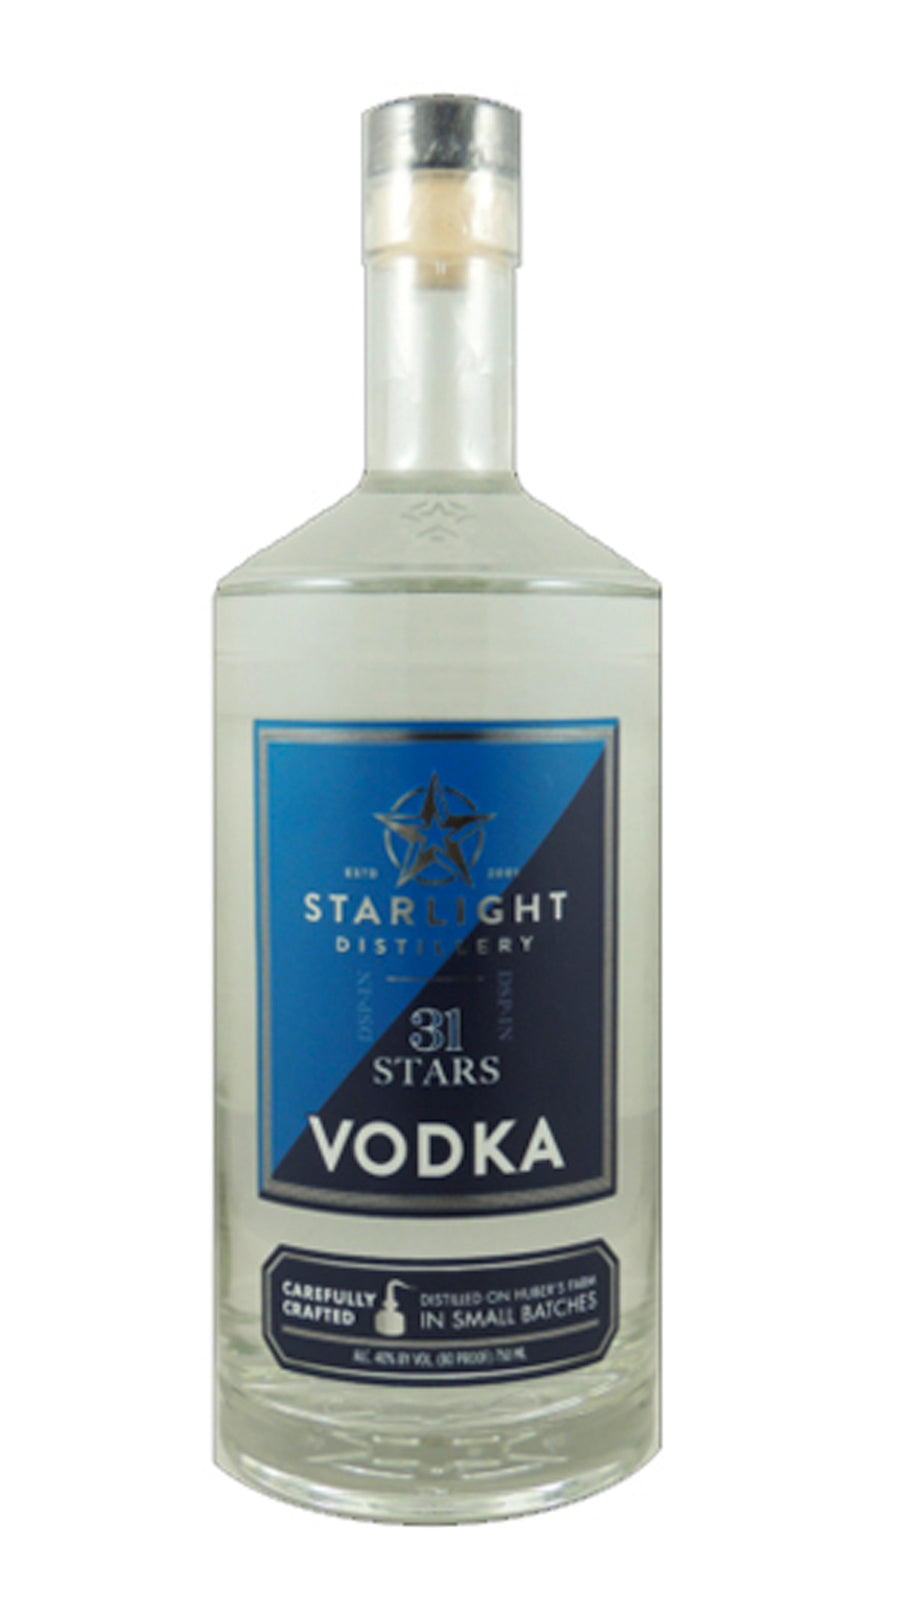 Starlight 31 Stars Vodka